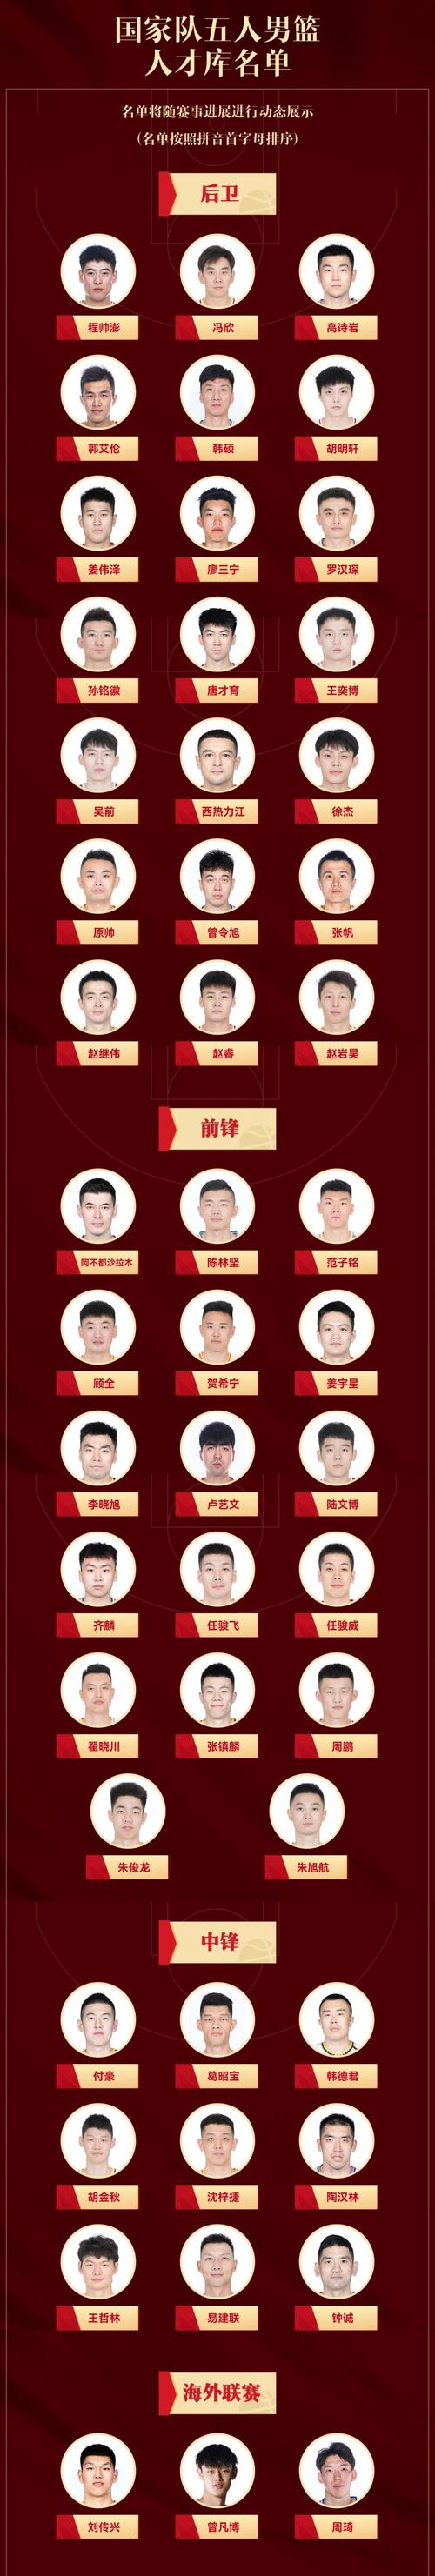 中国篮球队员名单